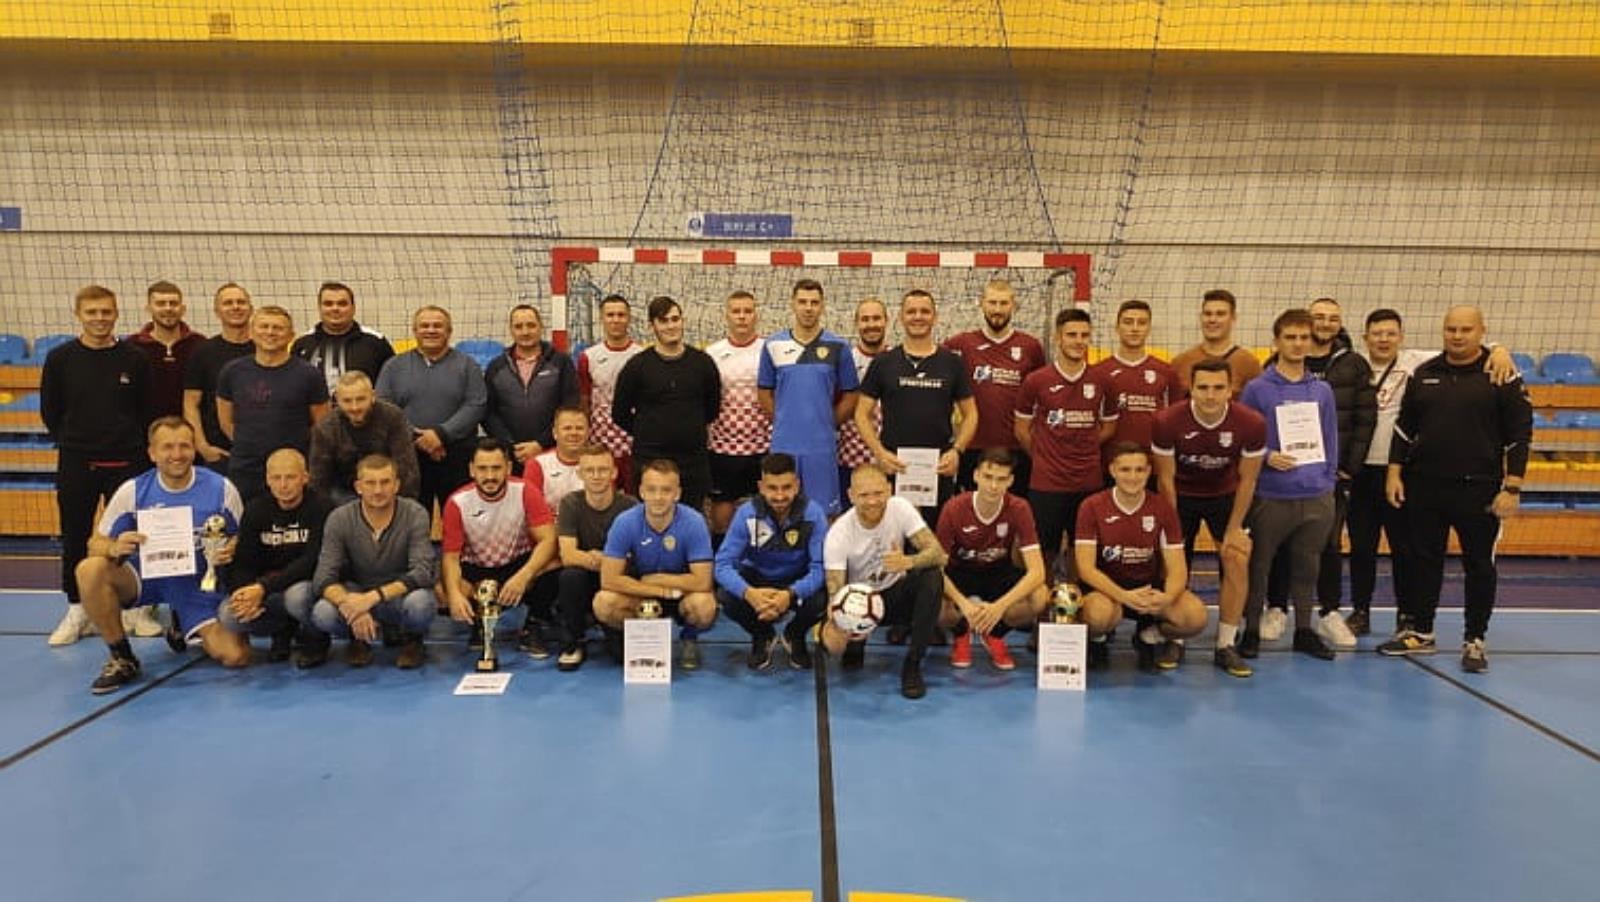 Turniej charytatywny w Pleszewie. Piłkarze wsparli Tomasza Błaszczyka [ZDJĘCIA] - Zdjęcie główne